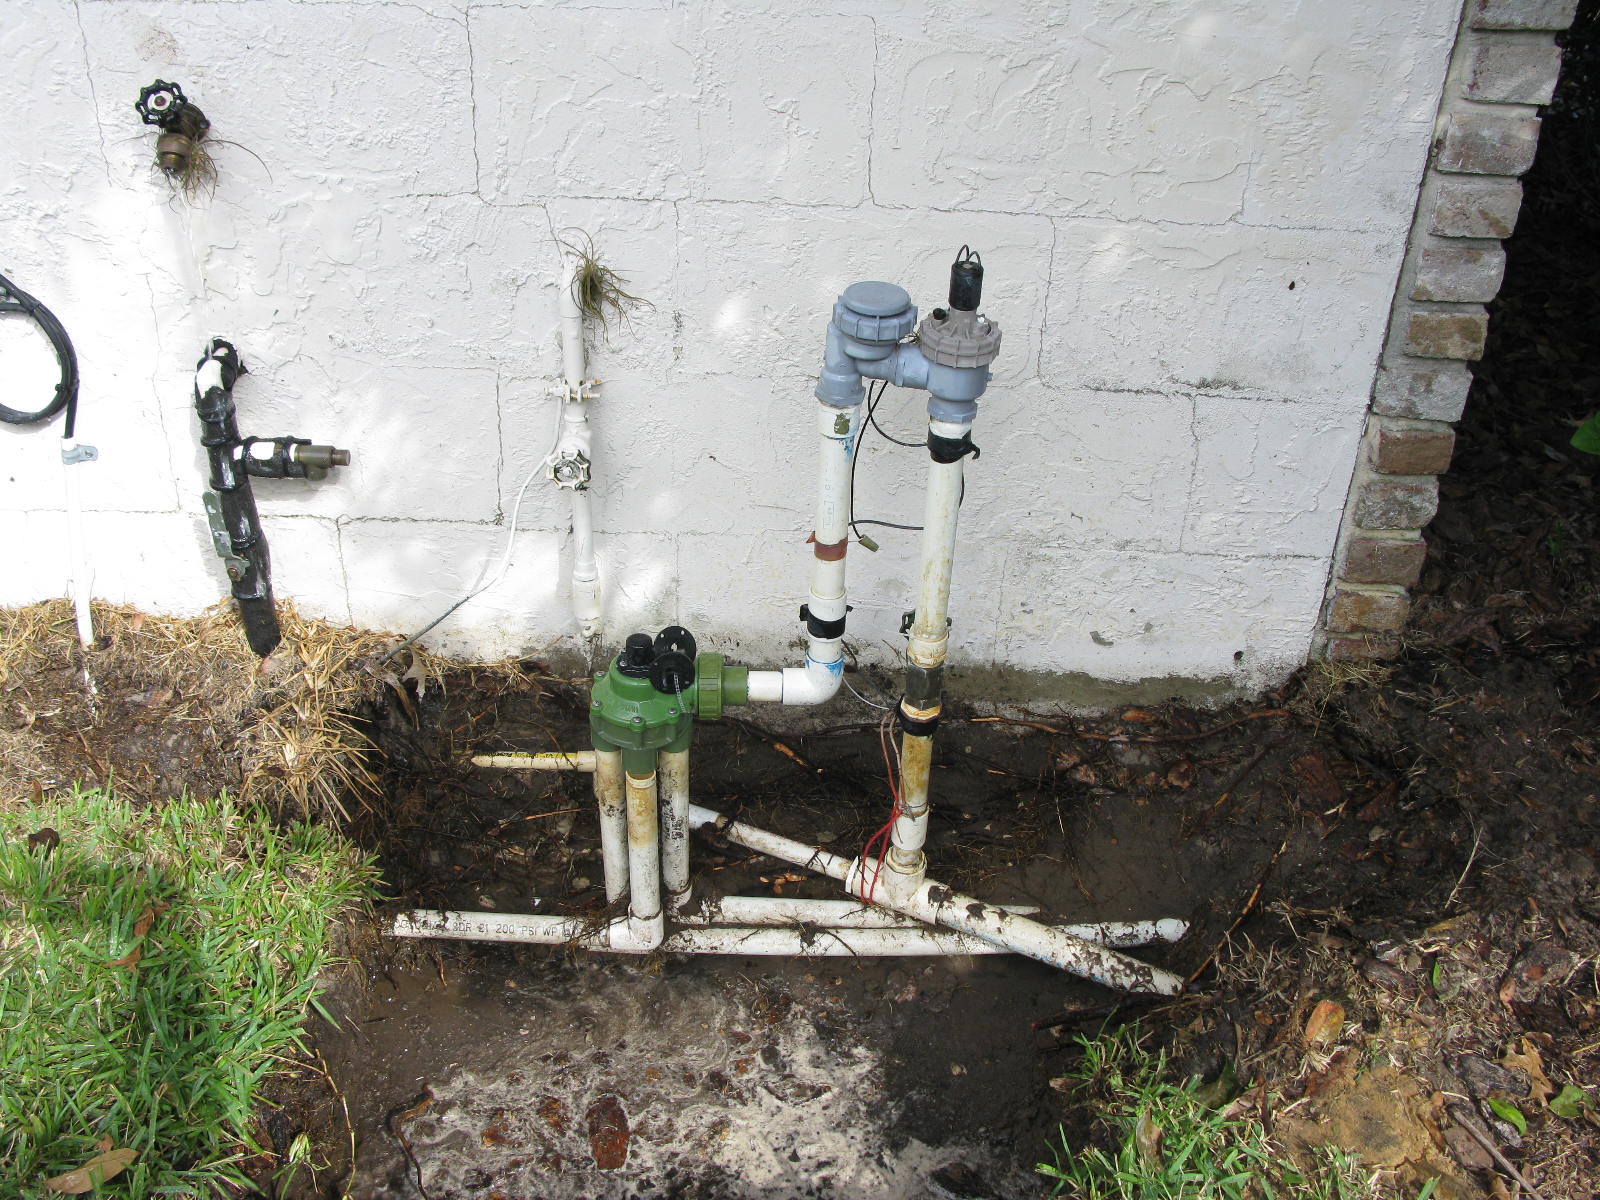 http://www.pro-sprinkler.com/wp-content/uploads/2012/11/anti-siphon-backflow-preventer-valves.jpg